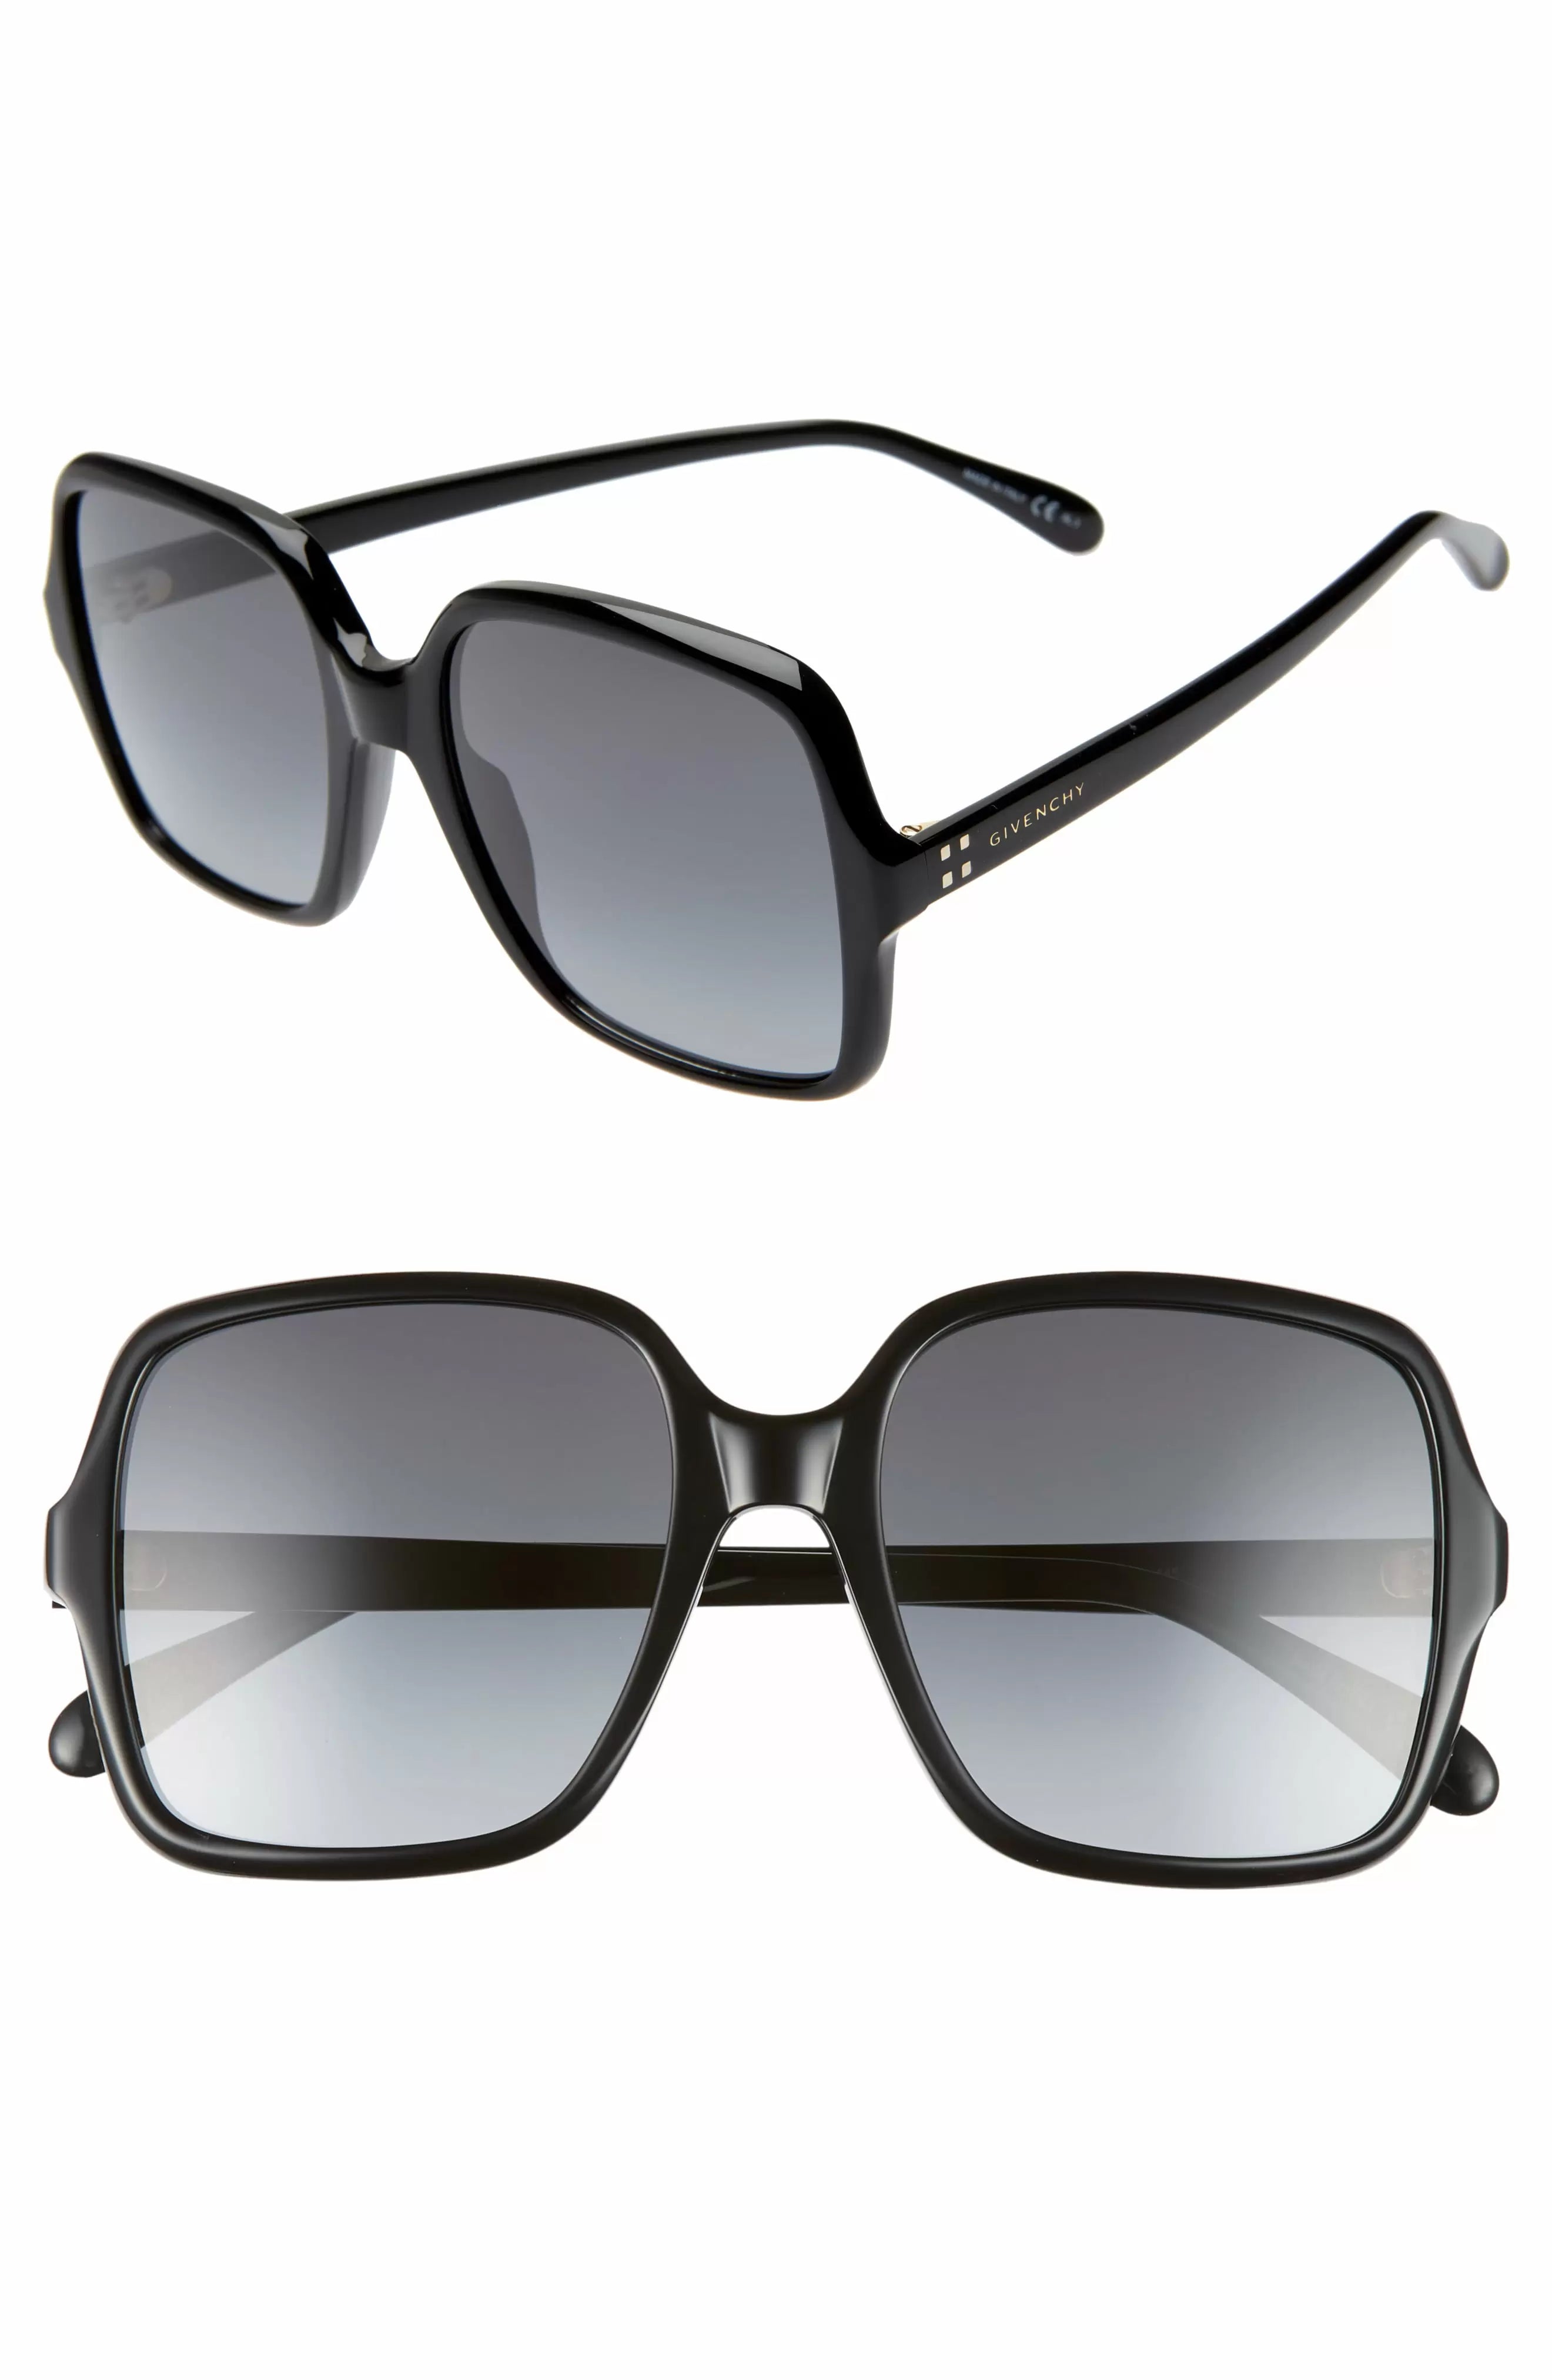 Givenchy GV-7123-G-S - 8079O Sunglasses - Black